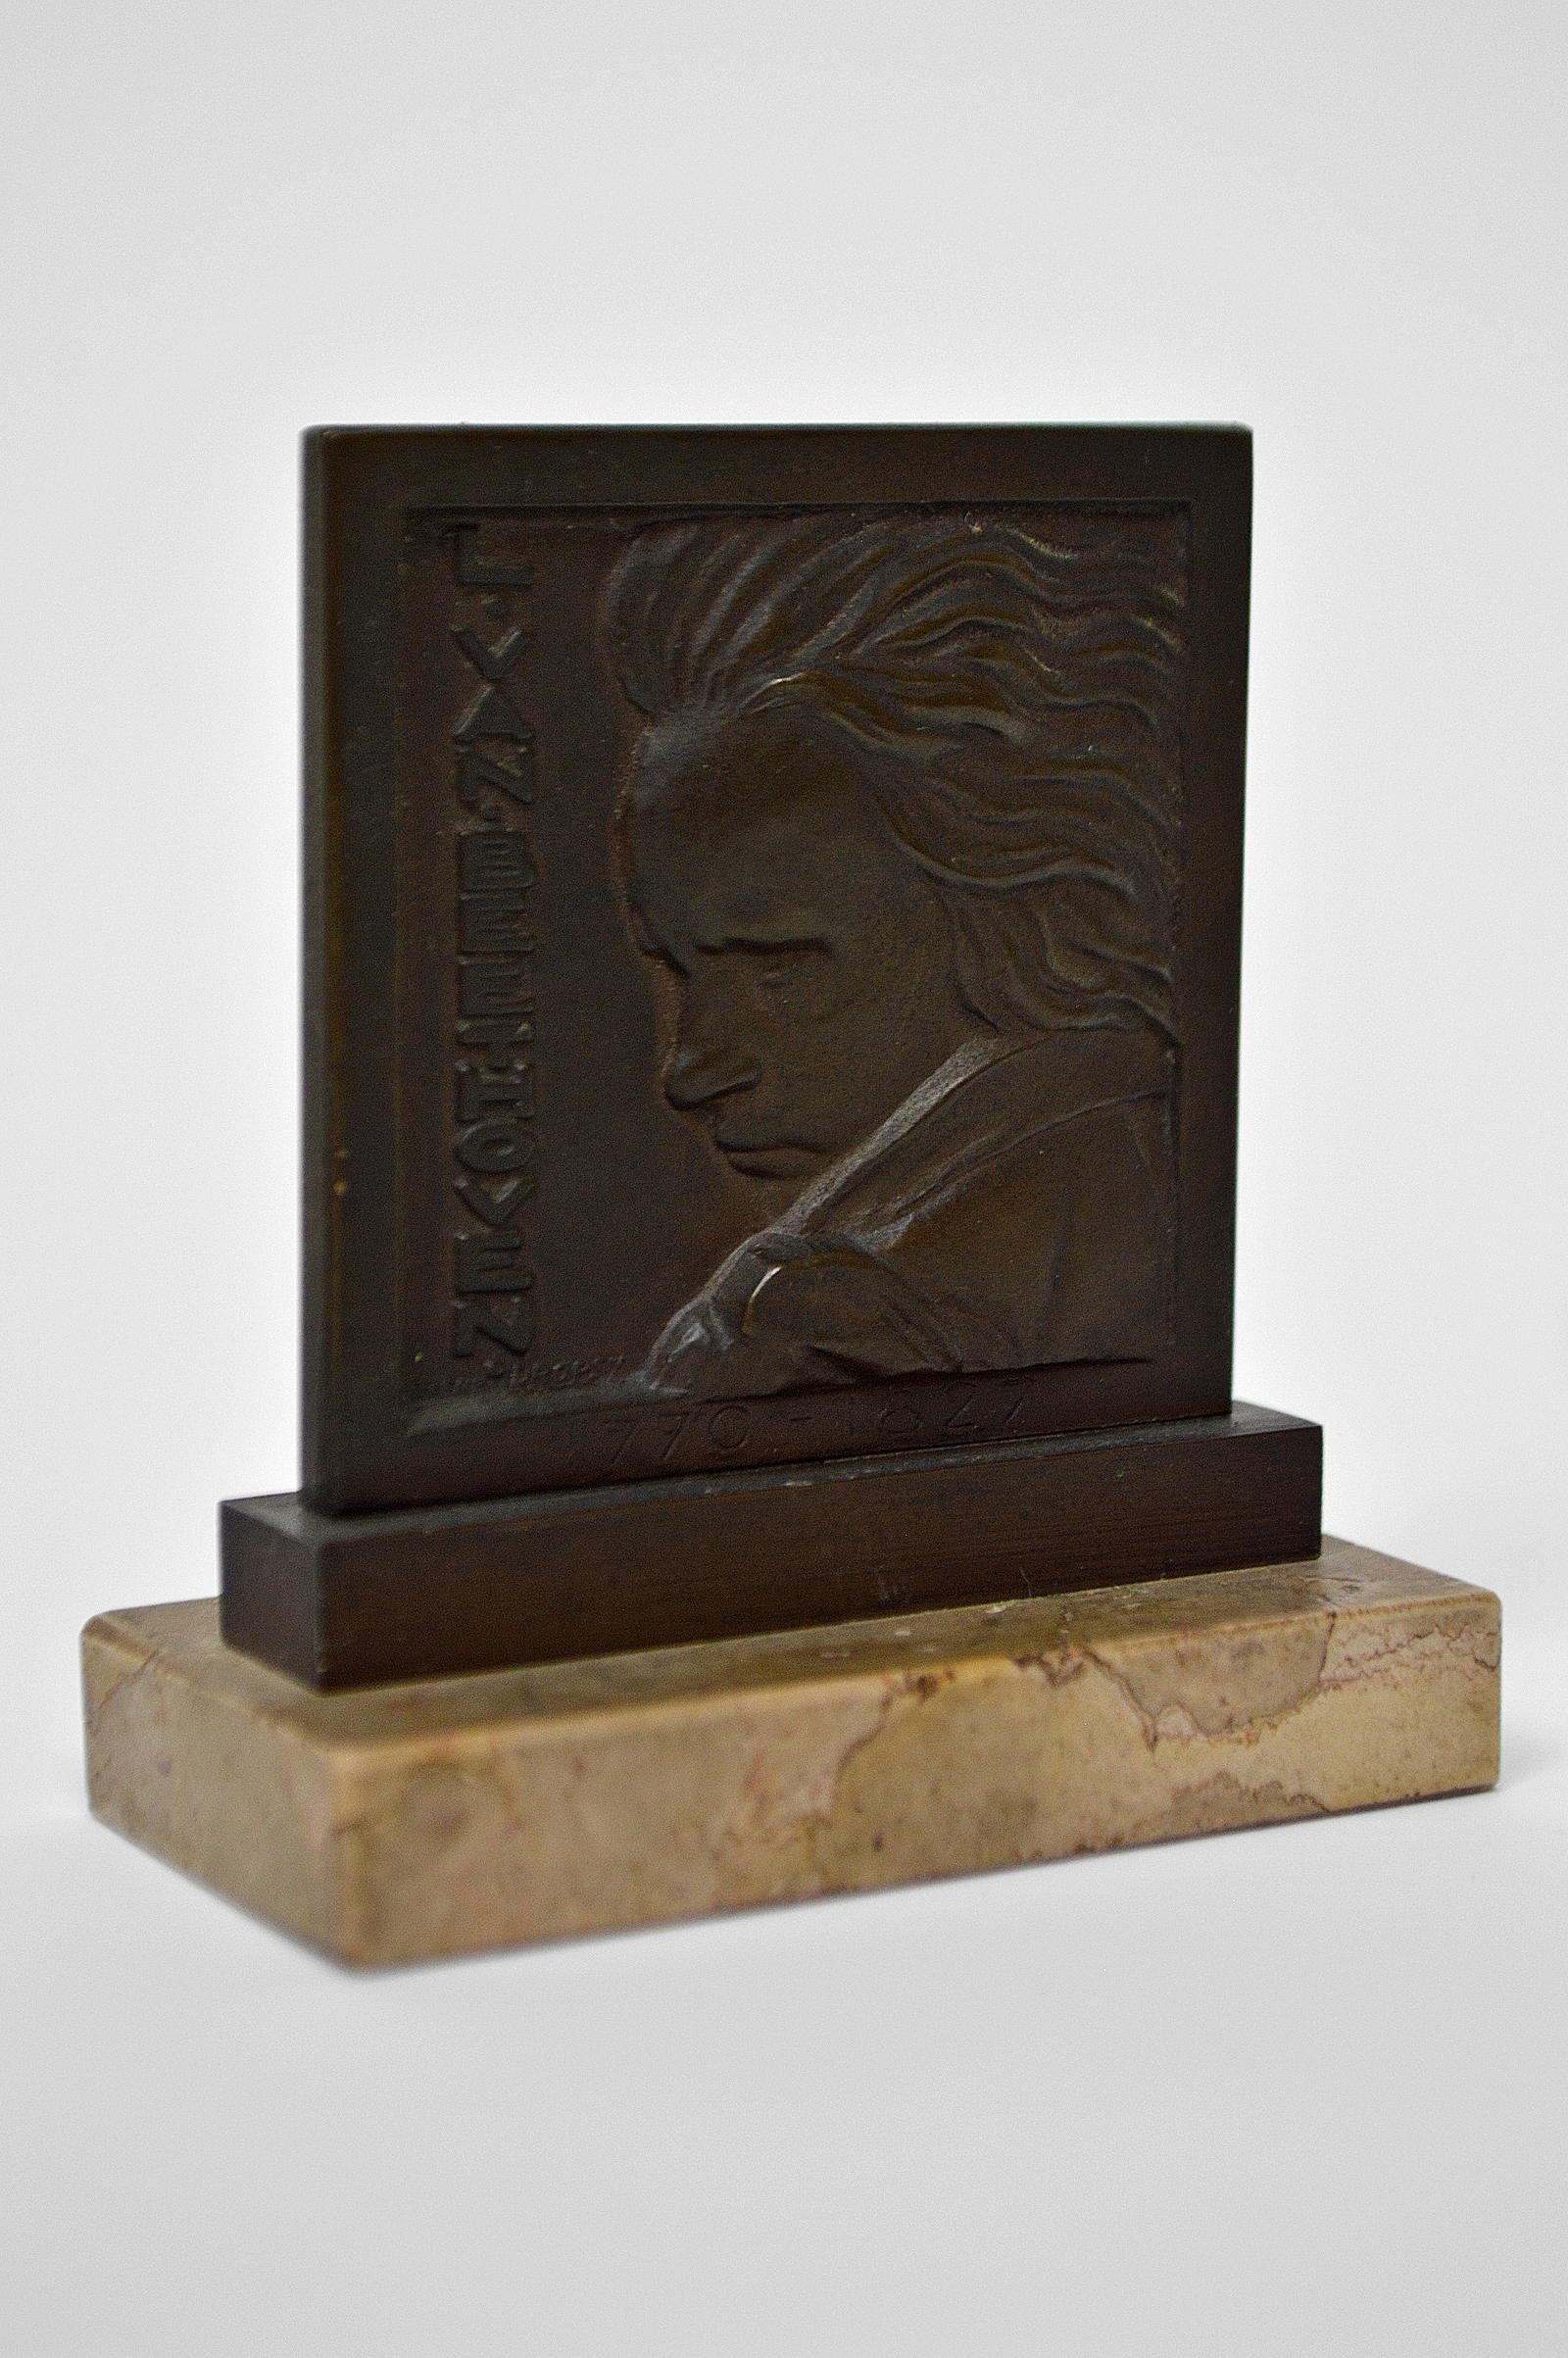 Auf Marmor montierte Bronzemedaille, die den berühmten Musiker Ludwig van Beethoven darstellt.

Von Henri Dropsy, Frankreich, um 1920.
In sehr gutem Zustand. 

Die Skulptur wurde wahrscheinlich anlässlich der Hundertjahrfeier von Beethovens